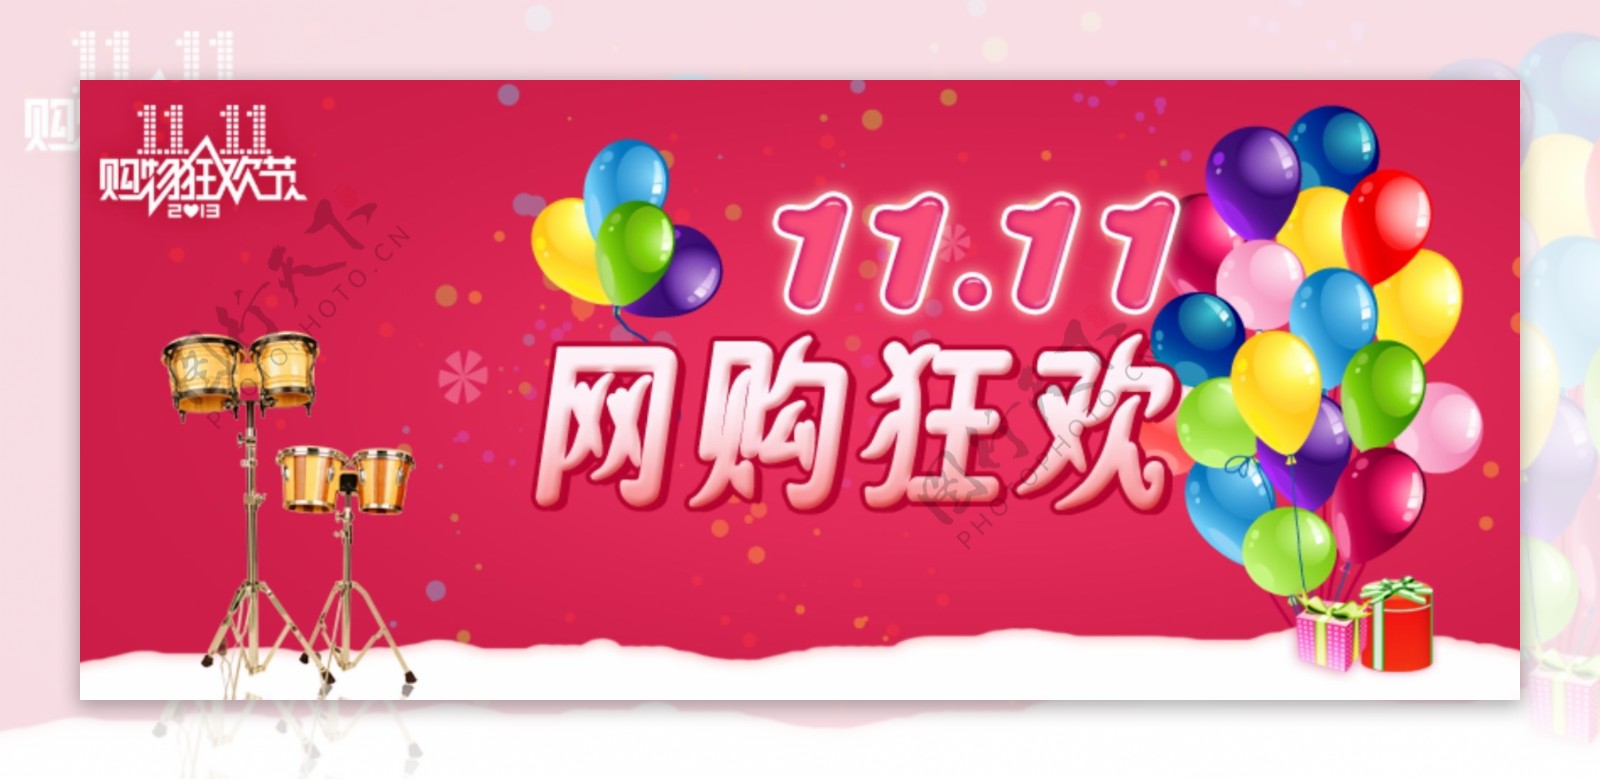 2013双11网购狂欢节促销海报